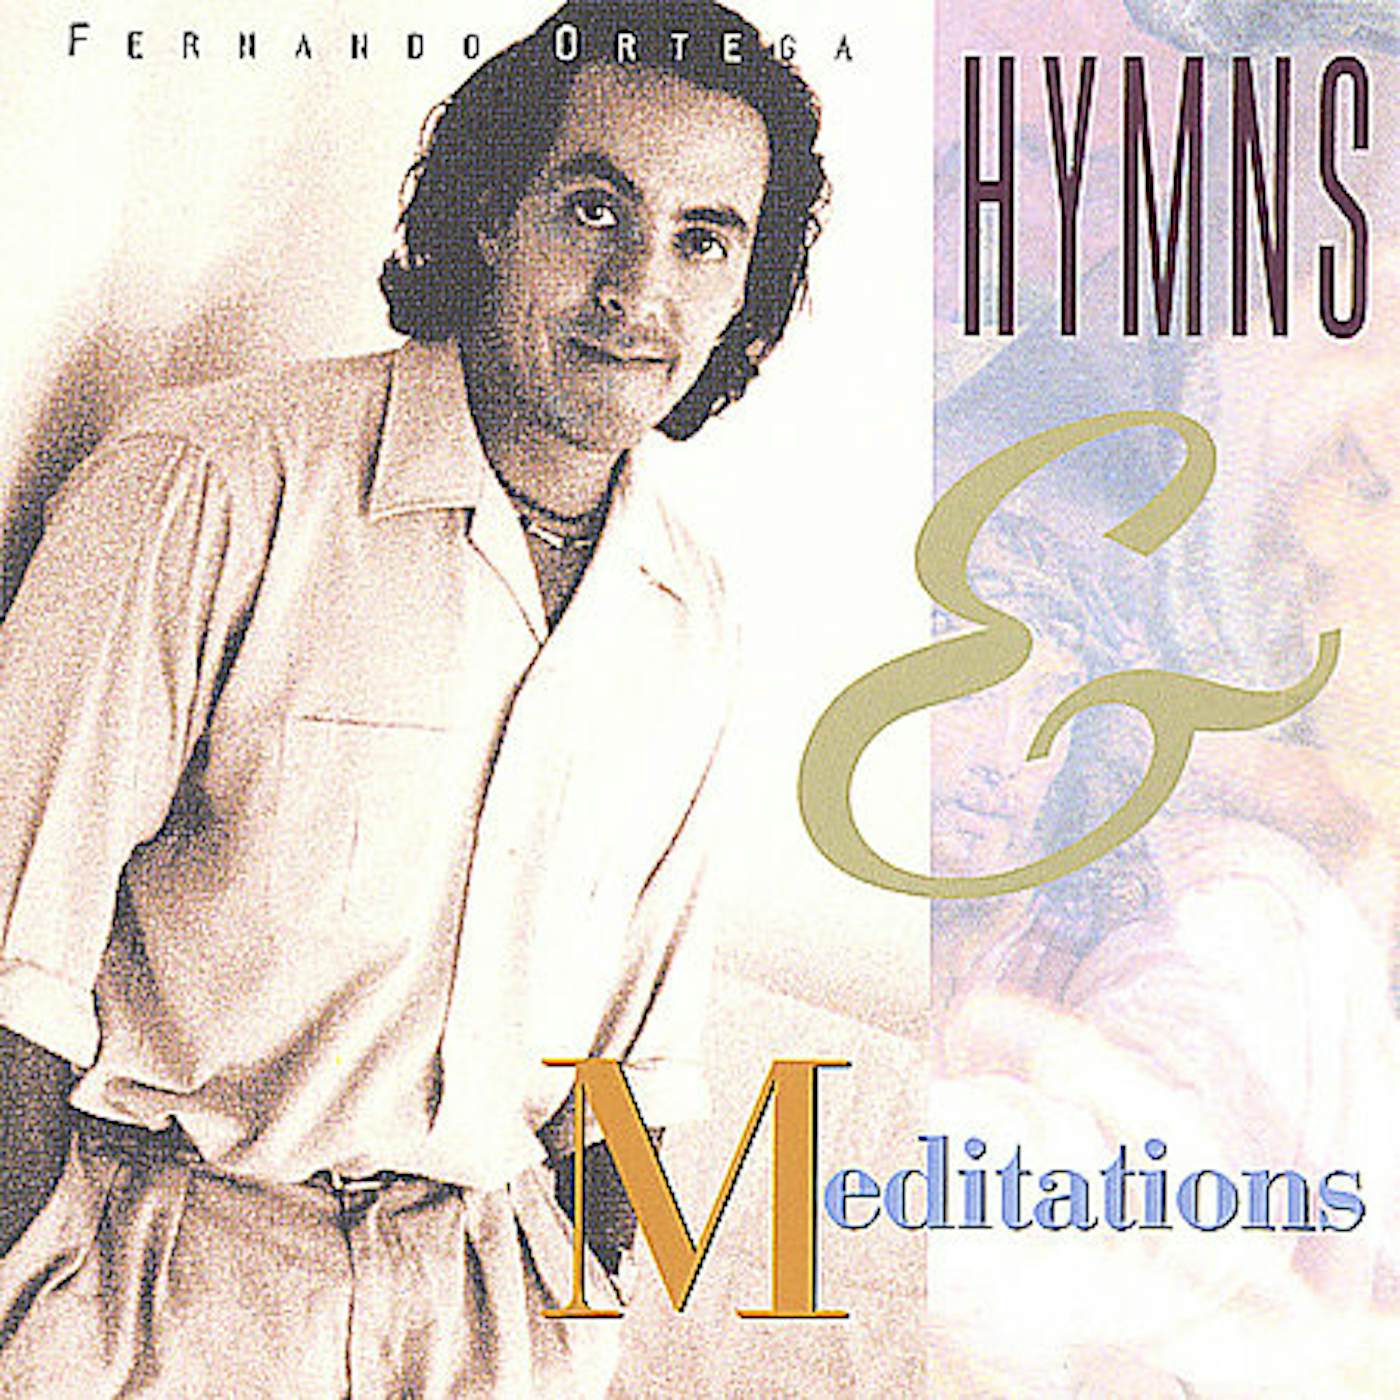 Fernando Ortega HYMNS & MEDITATIONS CD